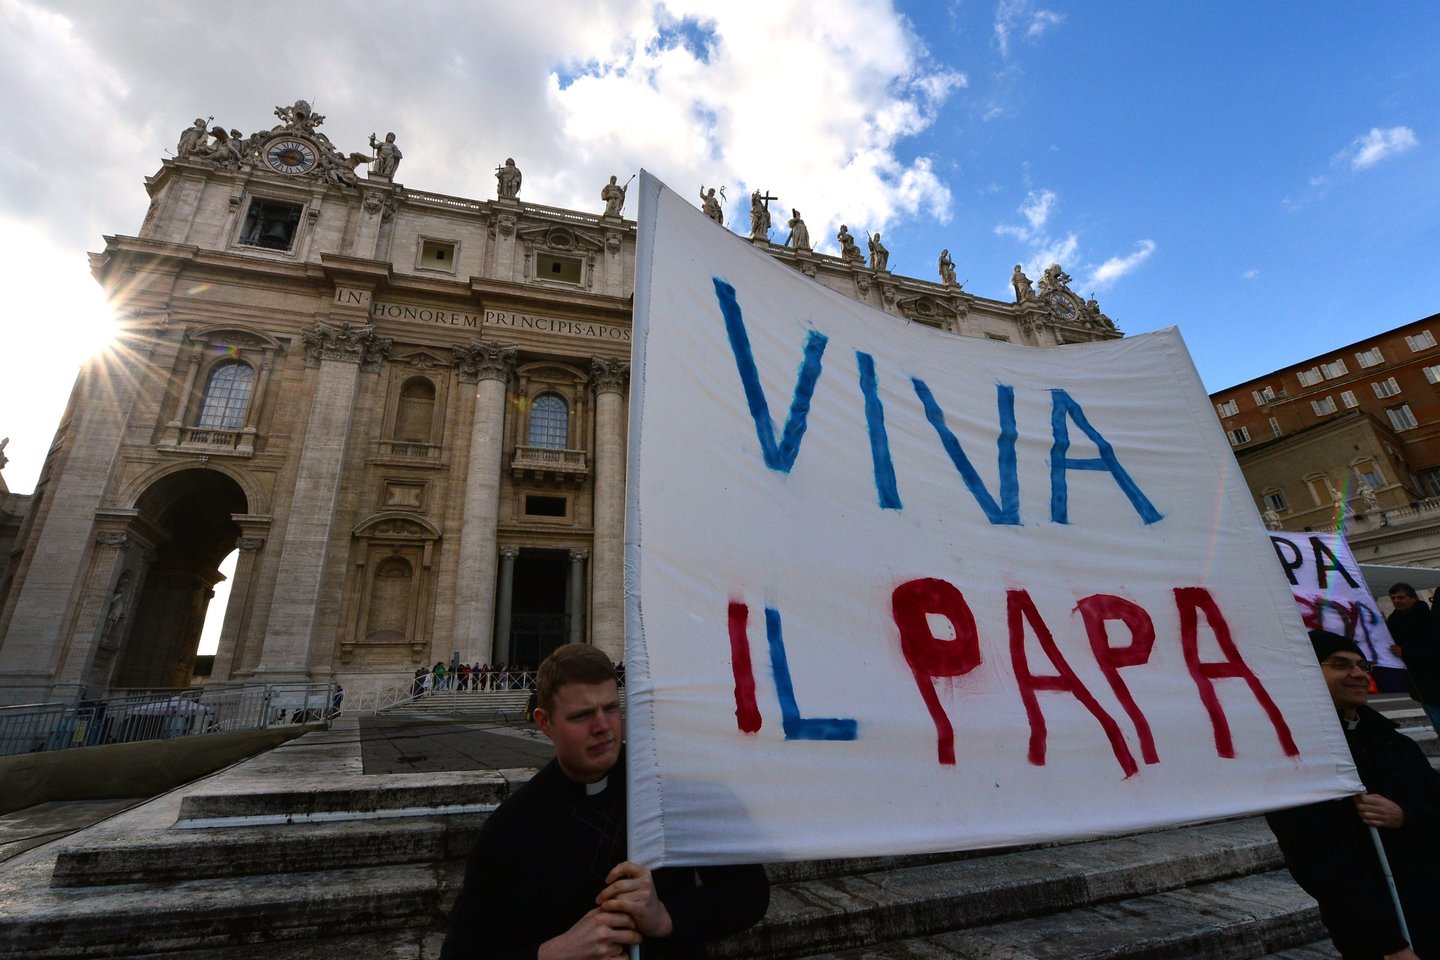  2013 m. iš Šventojo Sosto pasitraukė popiežius Benediktas XVI. Jį pakeitė popiežius Pranciškus, kuris Romos katalikų bažnyčią padarė atviresnę pasauliui.<br> AFP/Scanpix nuotr.